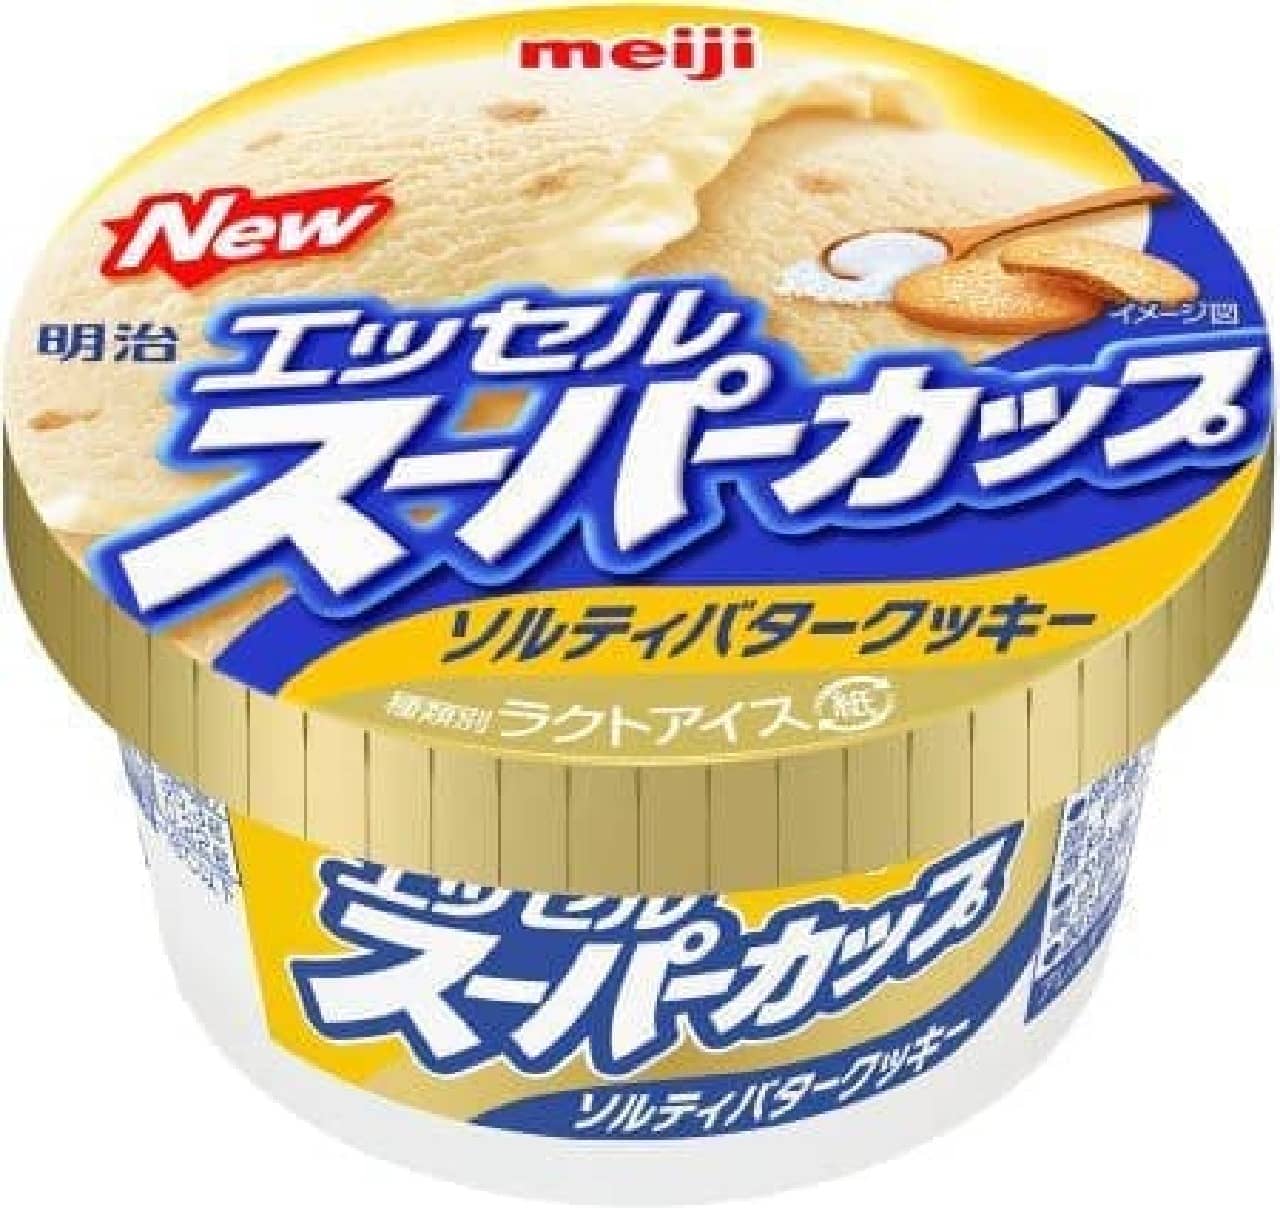 Meiji Essel Super Cup Salty Butter Cookies